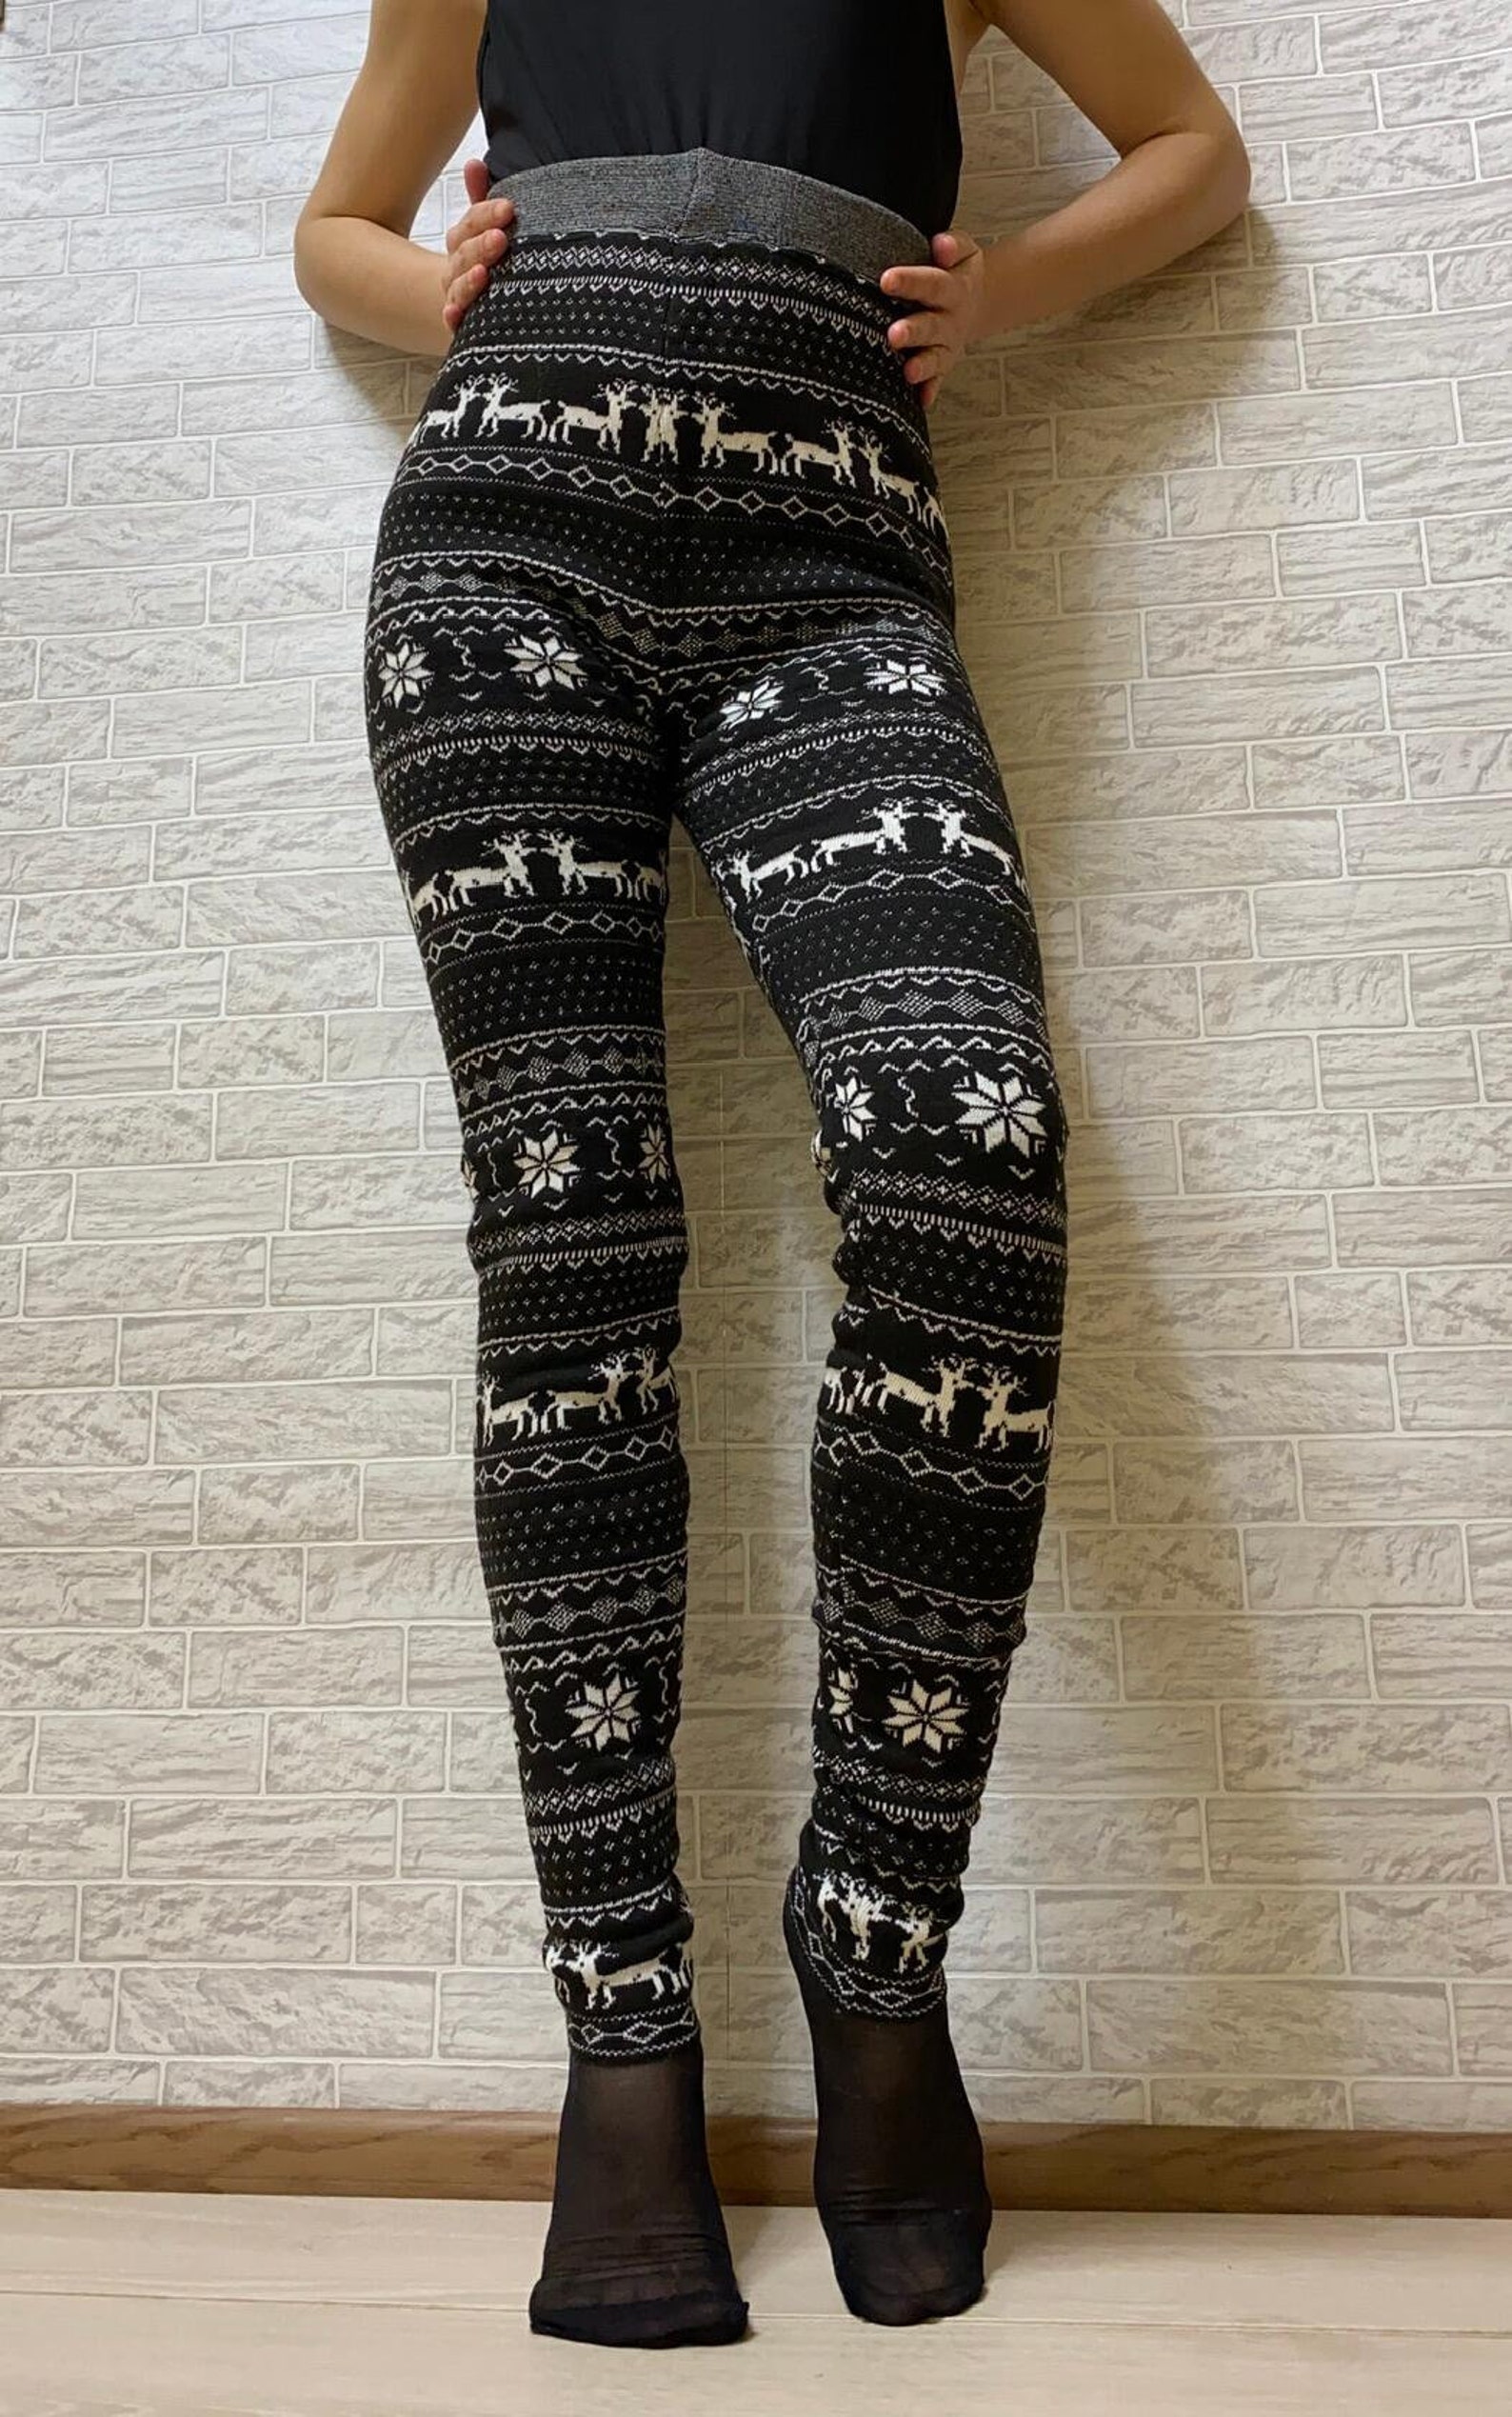 Winter leggings women Beige wool pants Knitted warm leggings | Etsy